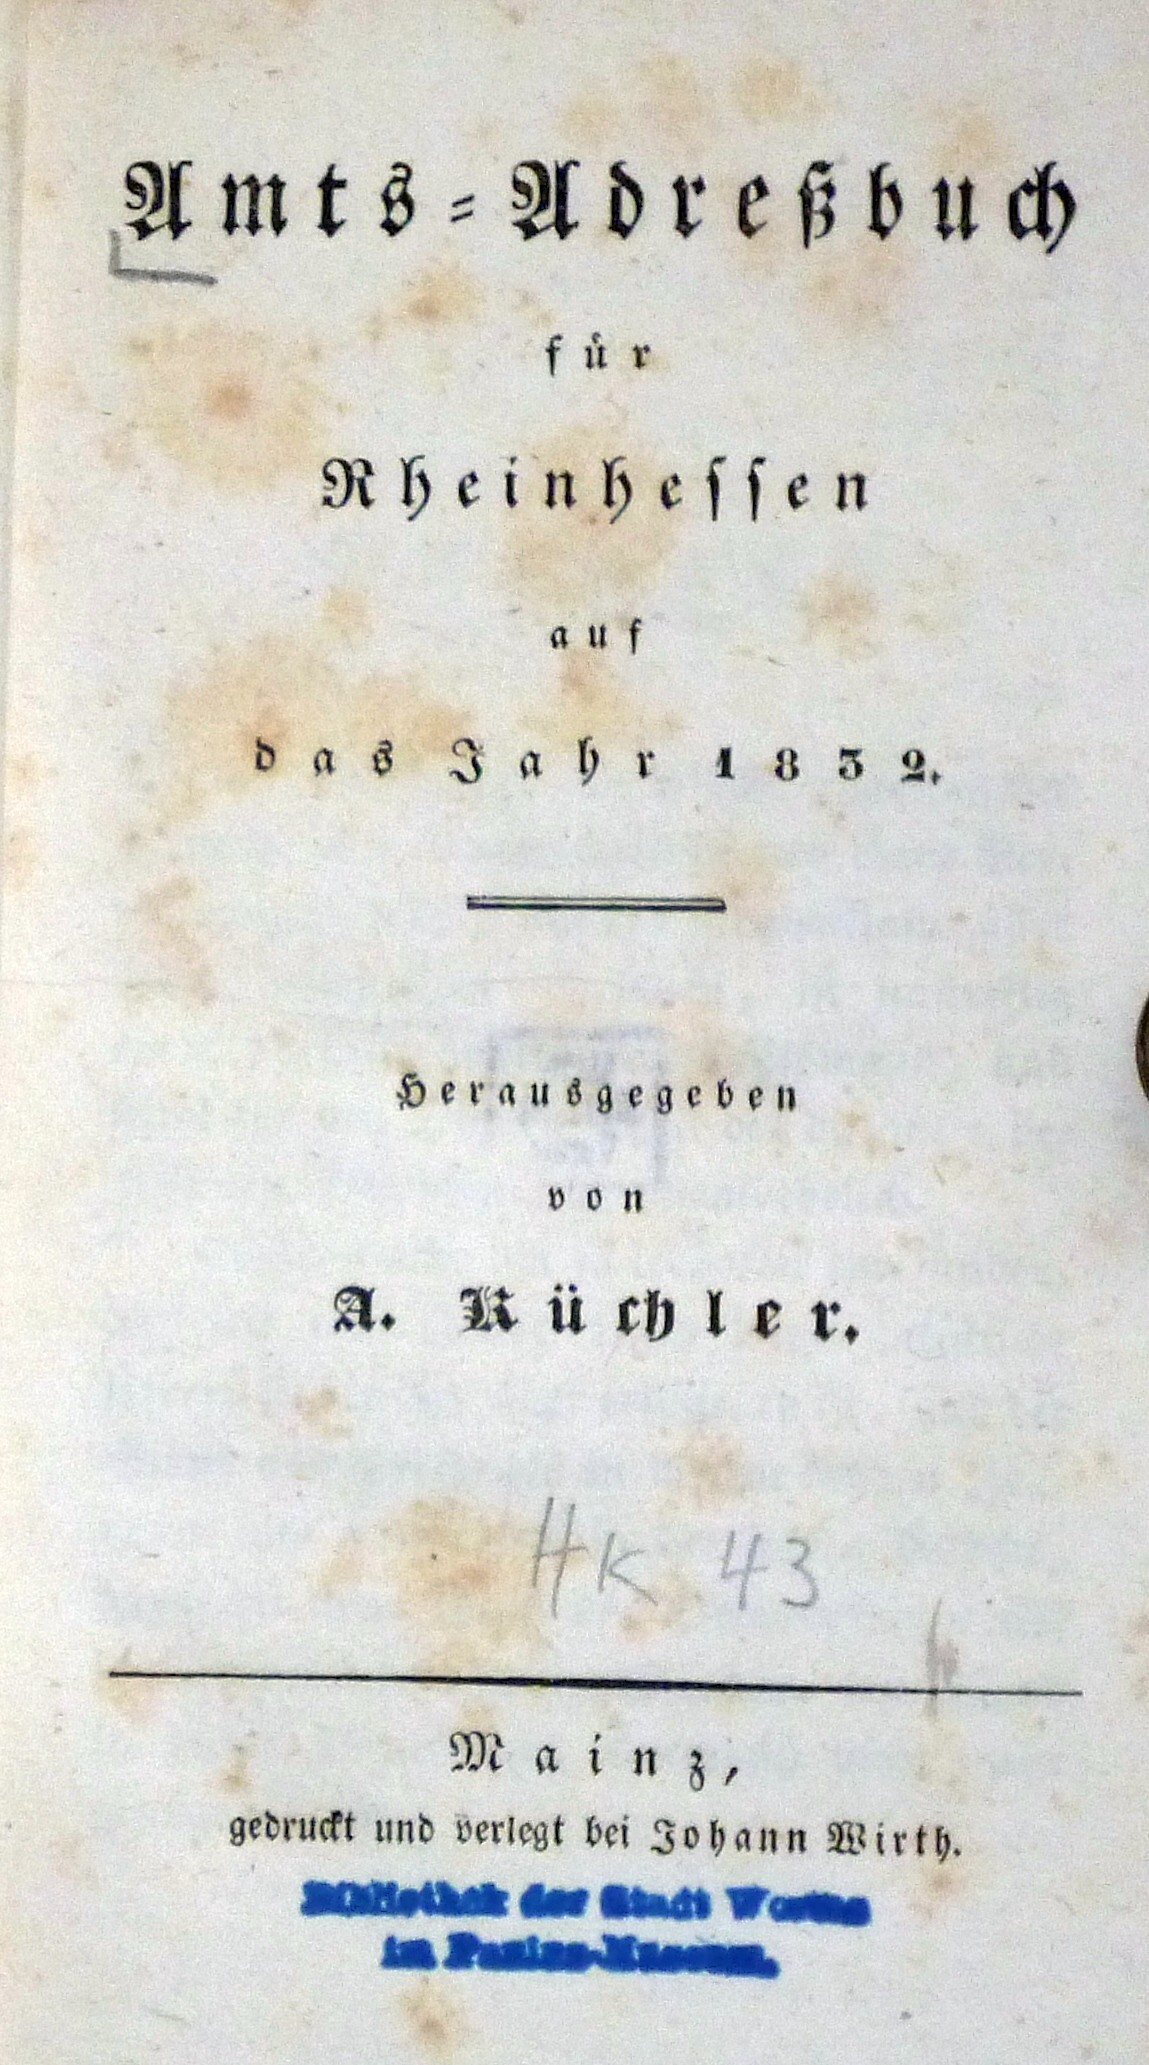 Amts-Adreßbuch für Rheinhessen auf das Jahr 1832, Seite 74-75 (Kulturverein Guntersblum CC BY-NC-SA)